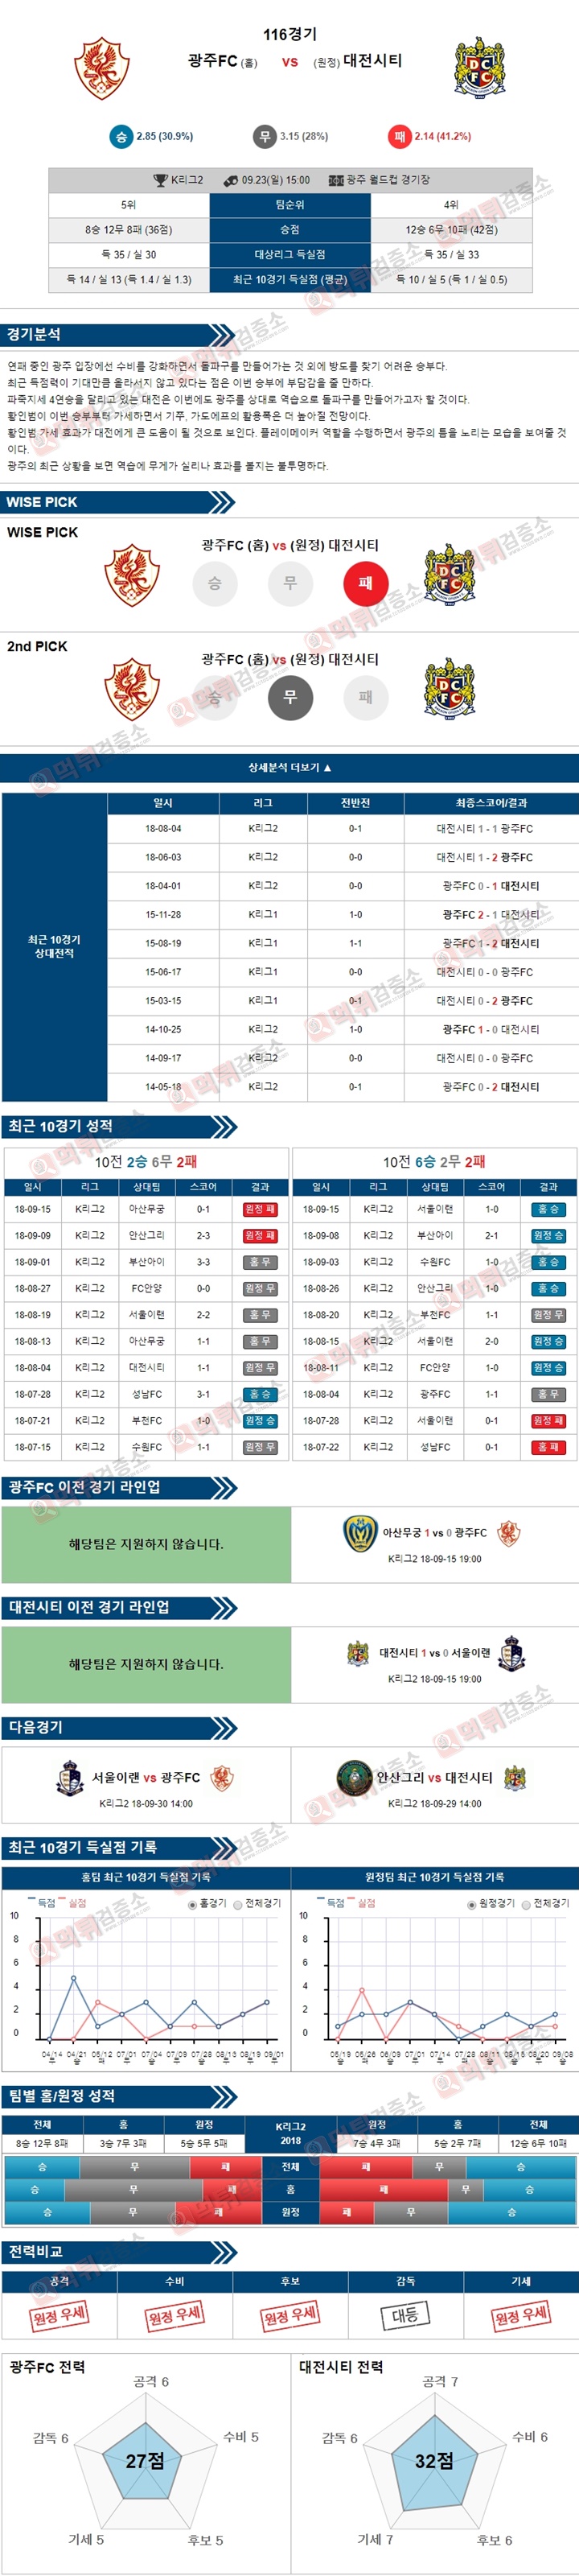 스포츠토토 분석픽 K리그2 9월23일 광주FC vs 대전시티 먹튀 검증소 분석픽